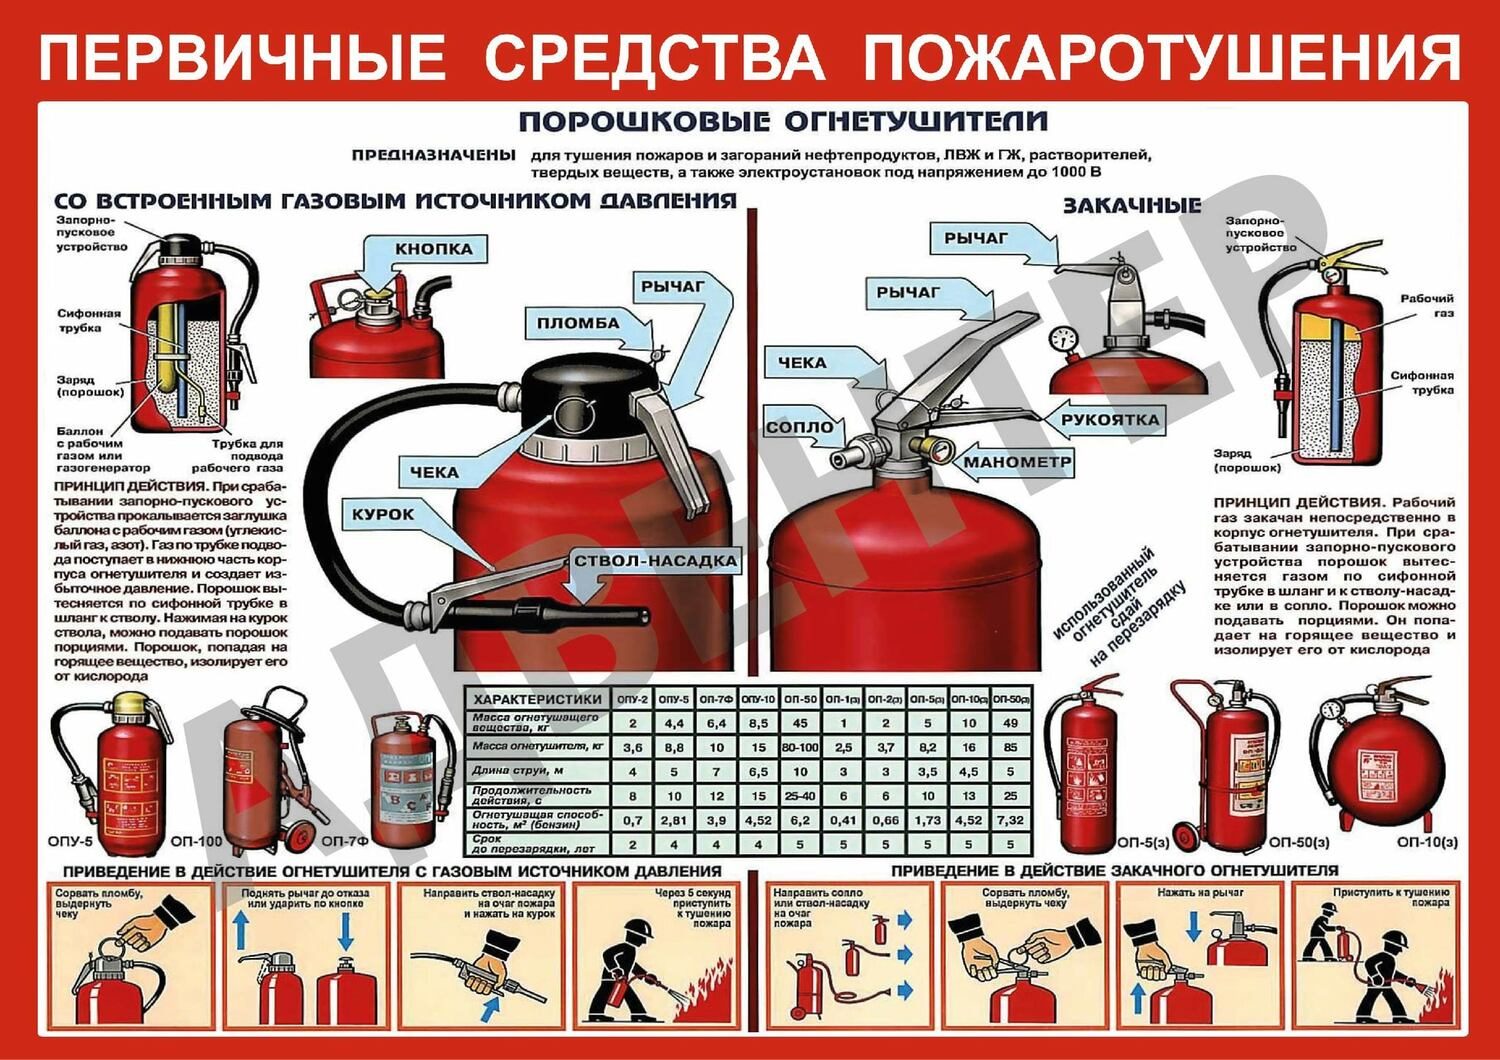 Первичные средства пожаротушения - инструкция как пользоваться